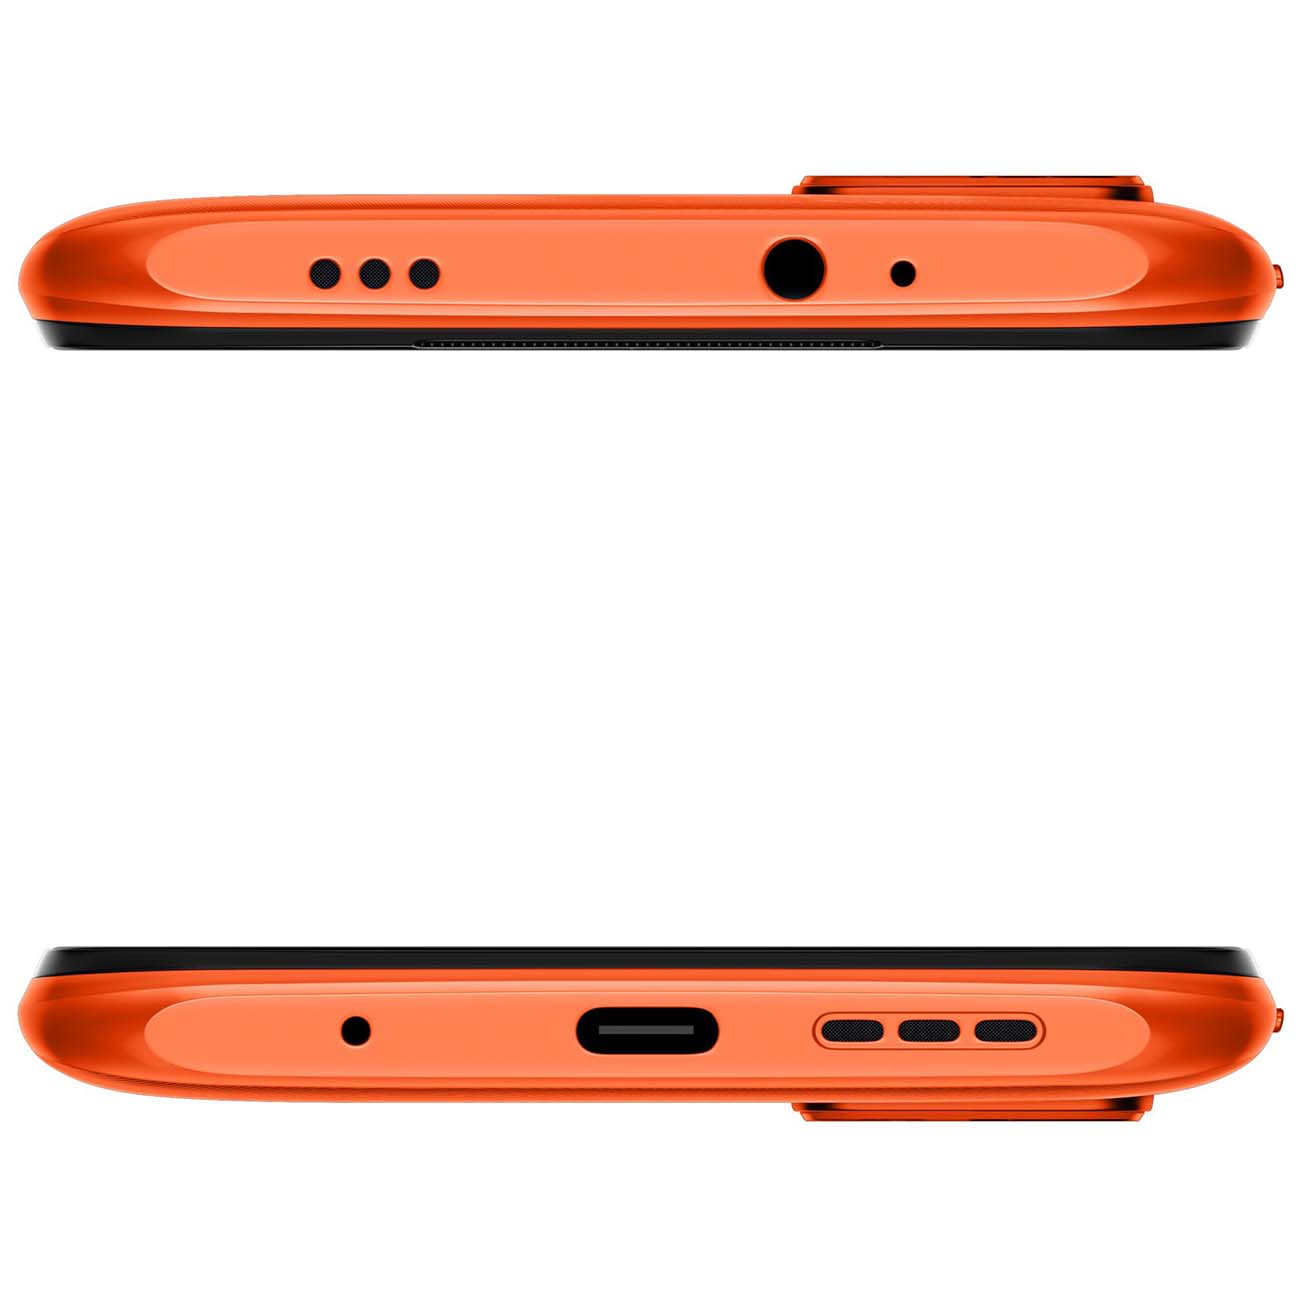 Redmi 9t nfc. Смартфон Xiaomi Redmi 9t NFC 4/128 ГБ. Xiaomi Redmi 9t Orange. Оранжевый смартфон. Xiaomi Redmi оранжевый.